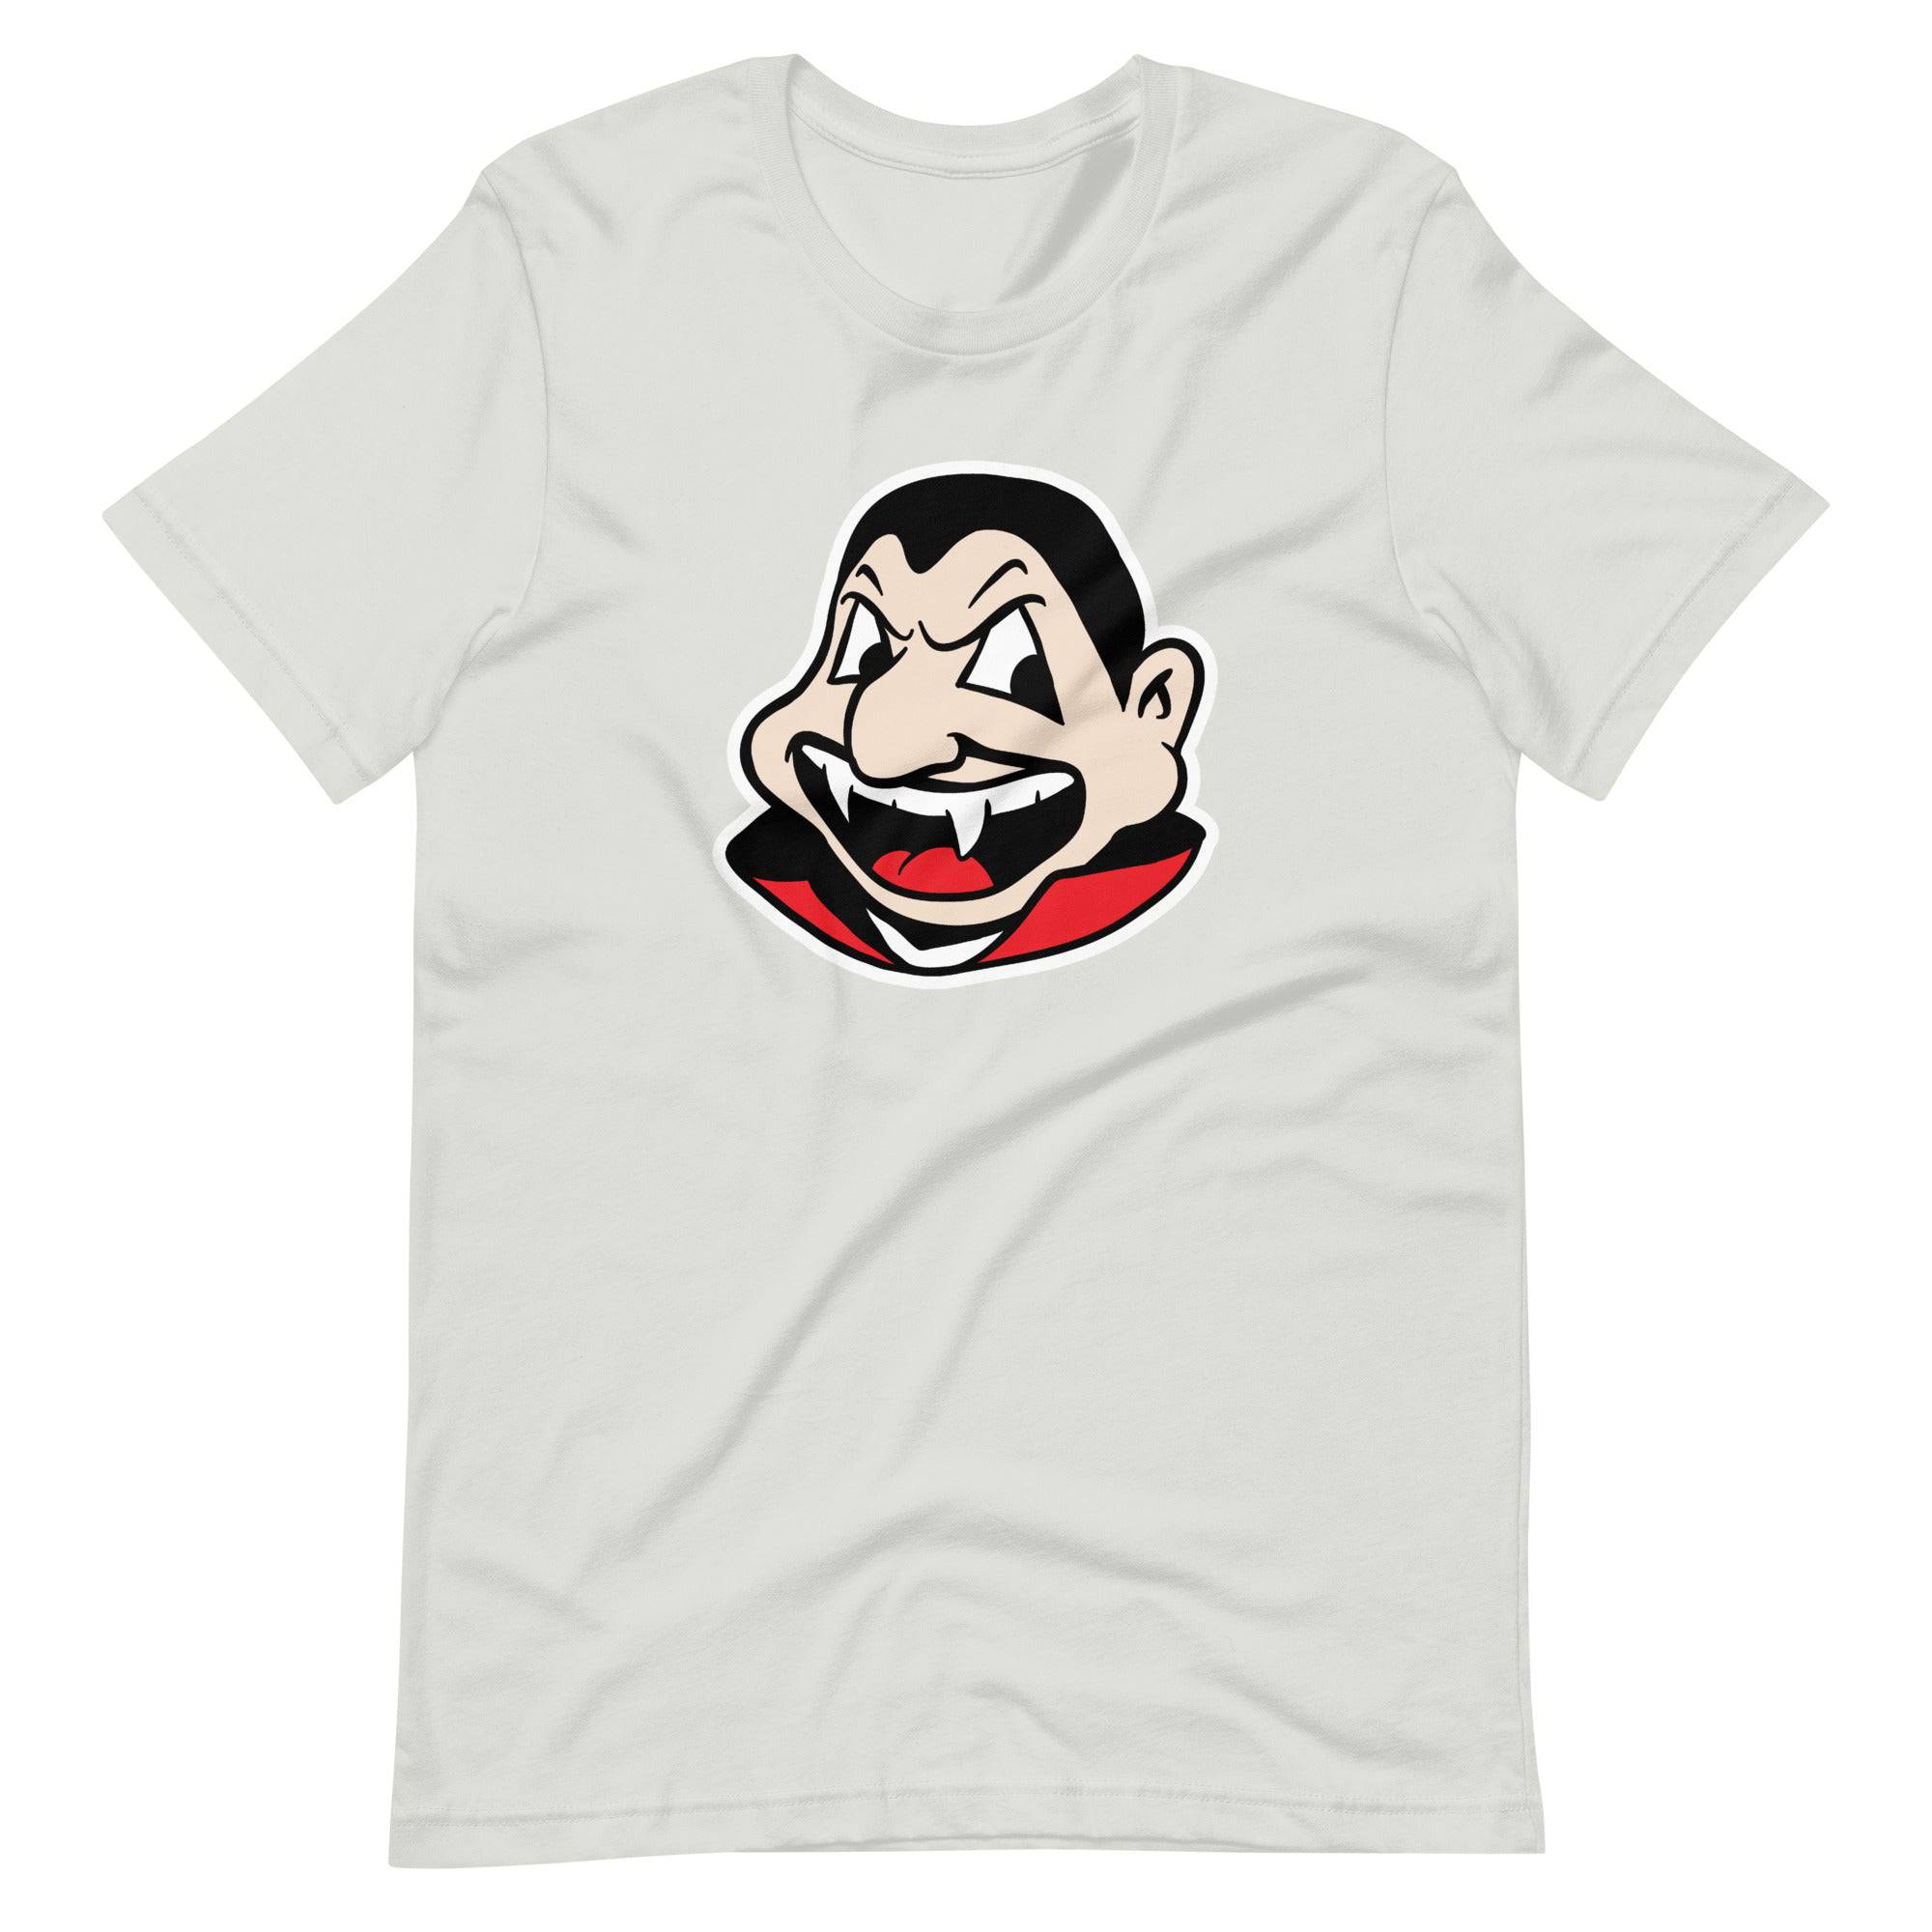 Cleveland - Halloween Vampire t-shirt, Shirts & Tops, WeBleedOhio, WeBleedOhio